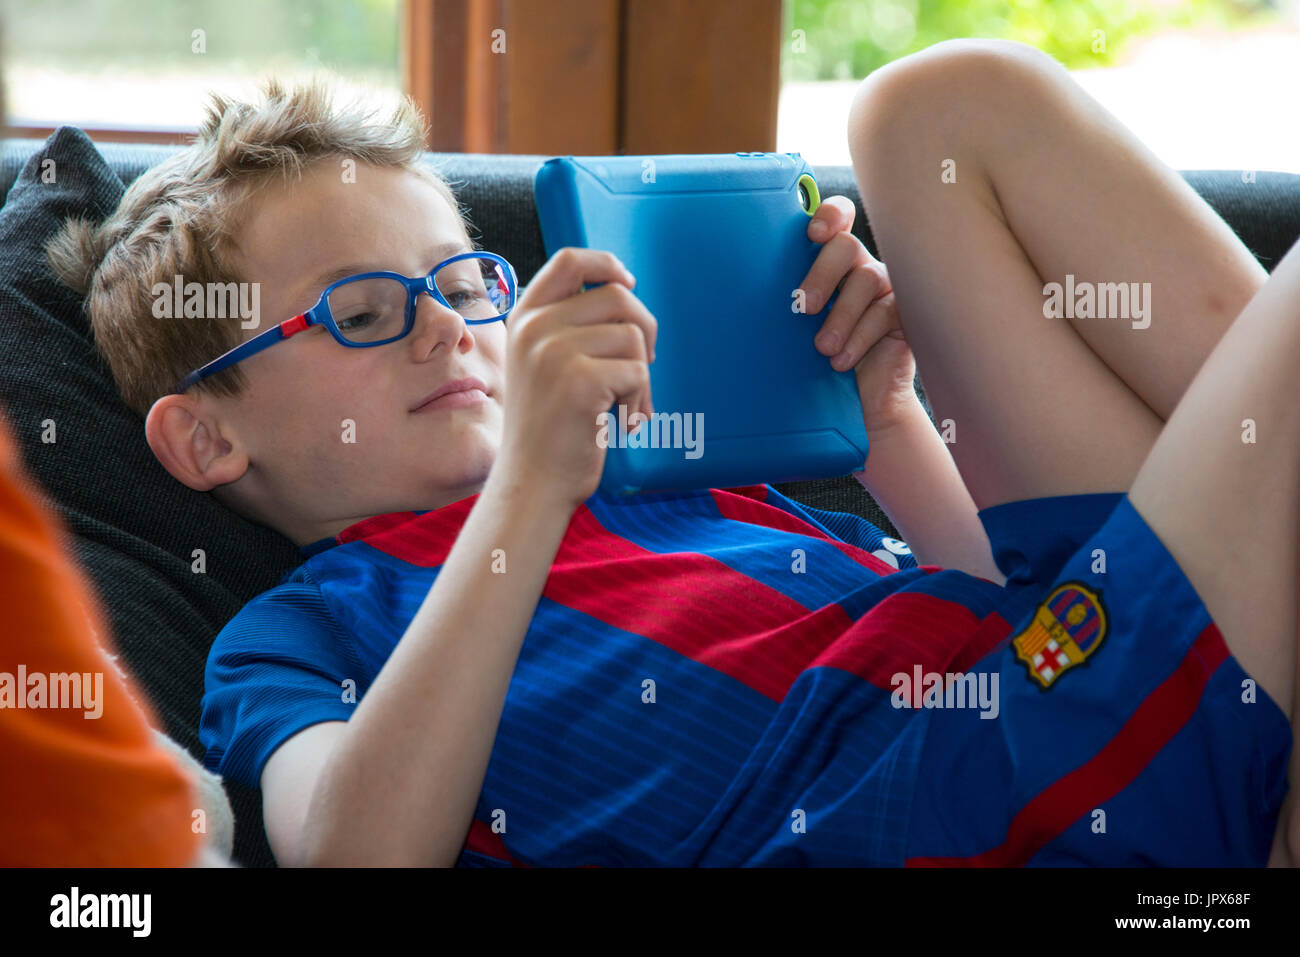 Jeune garçon, 6 ans, jouer à des jeux sur tablette, close-up Banque D'Images